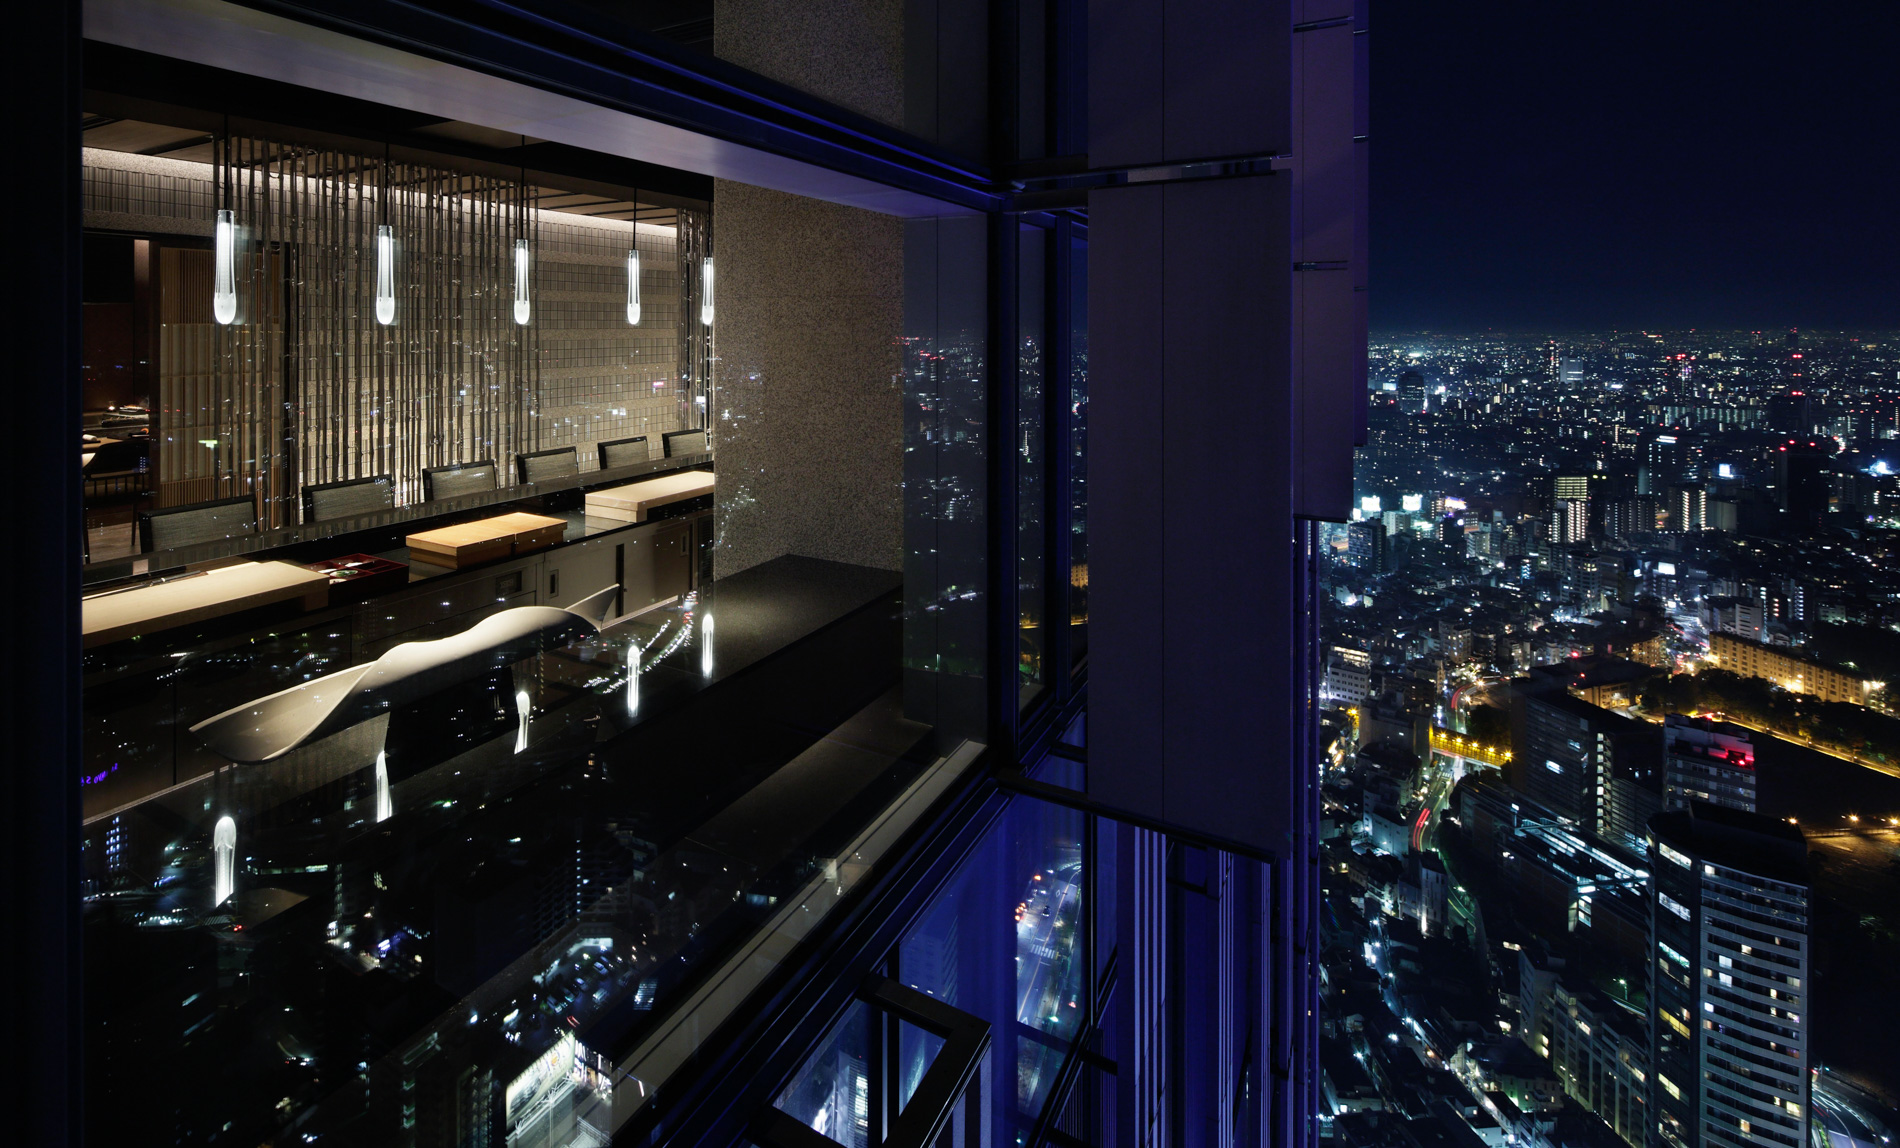 The Ritz-Carlton, Tokyo